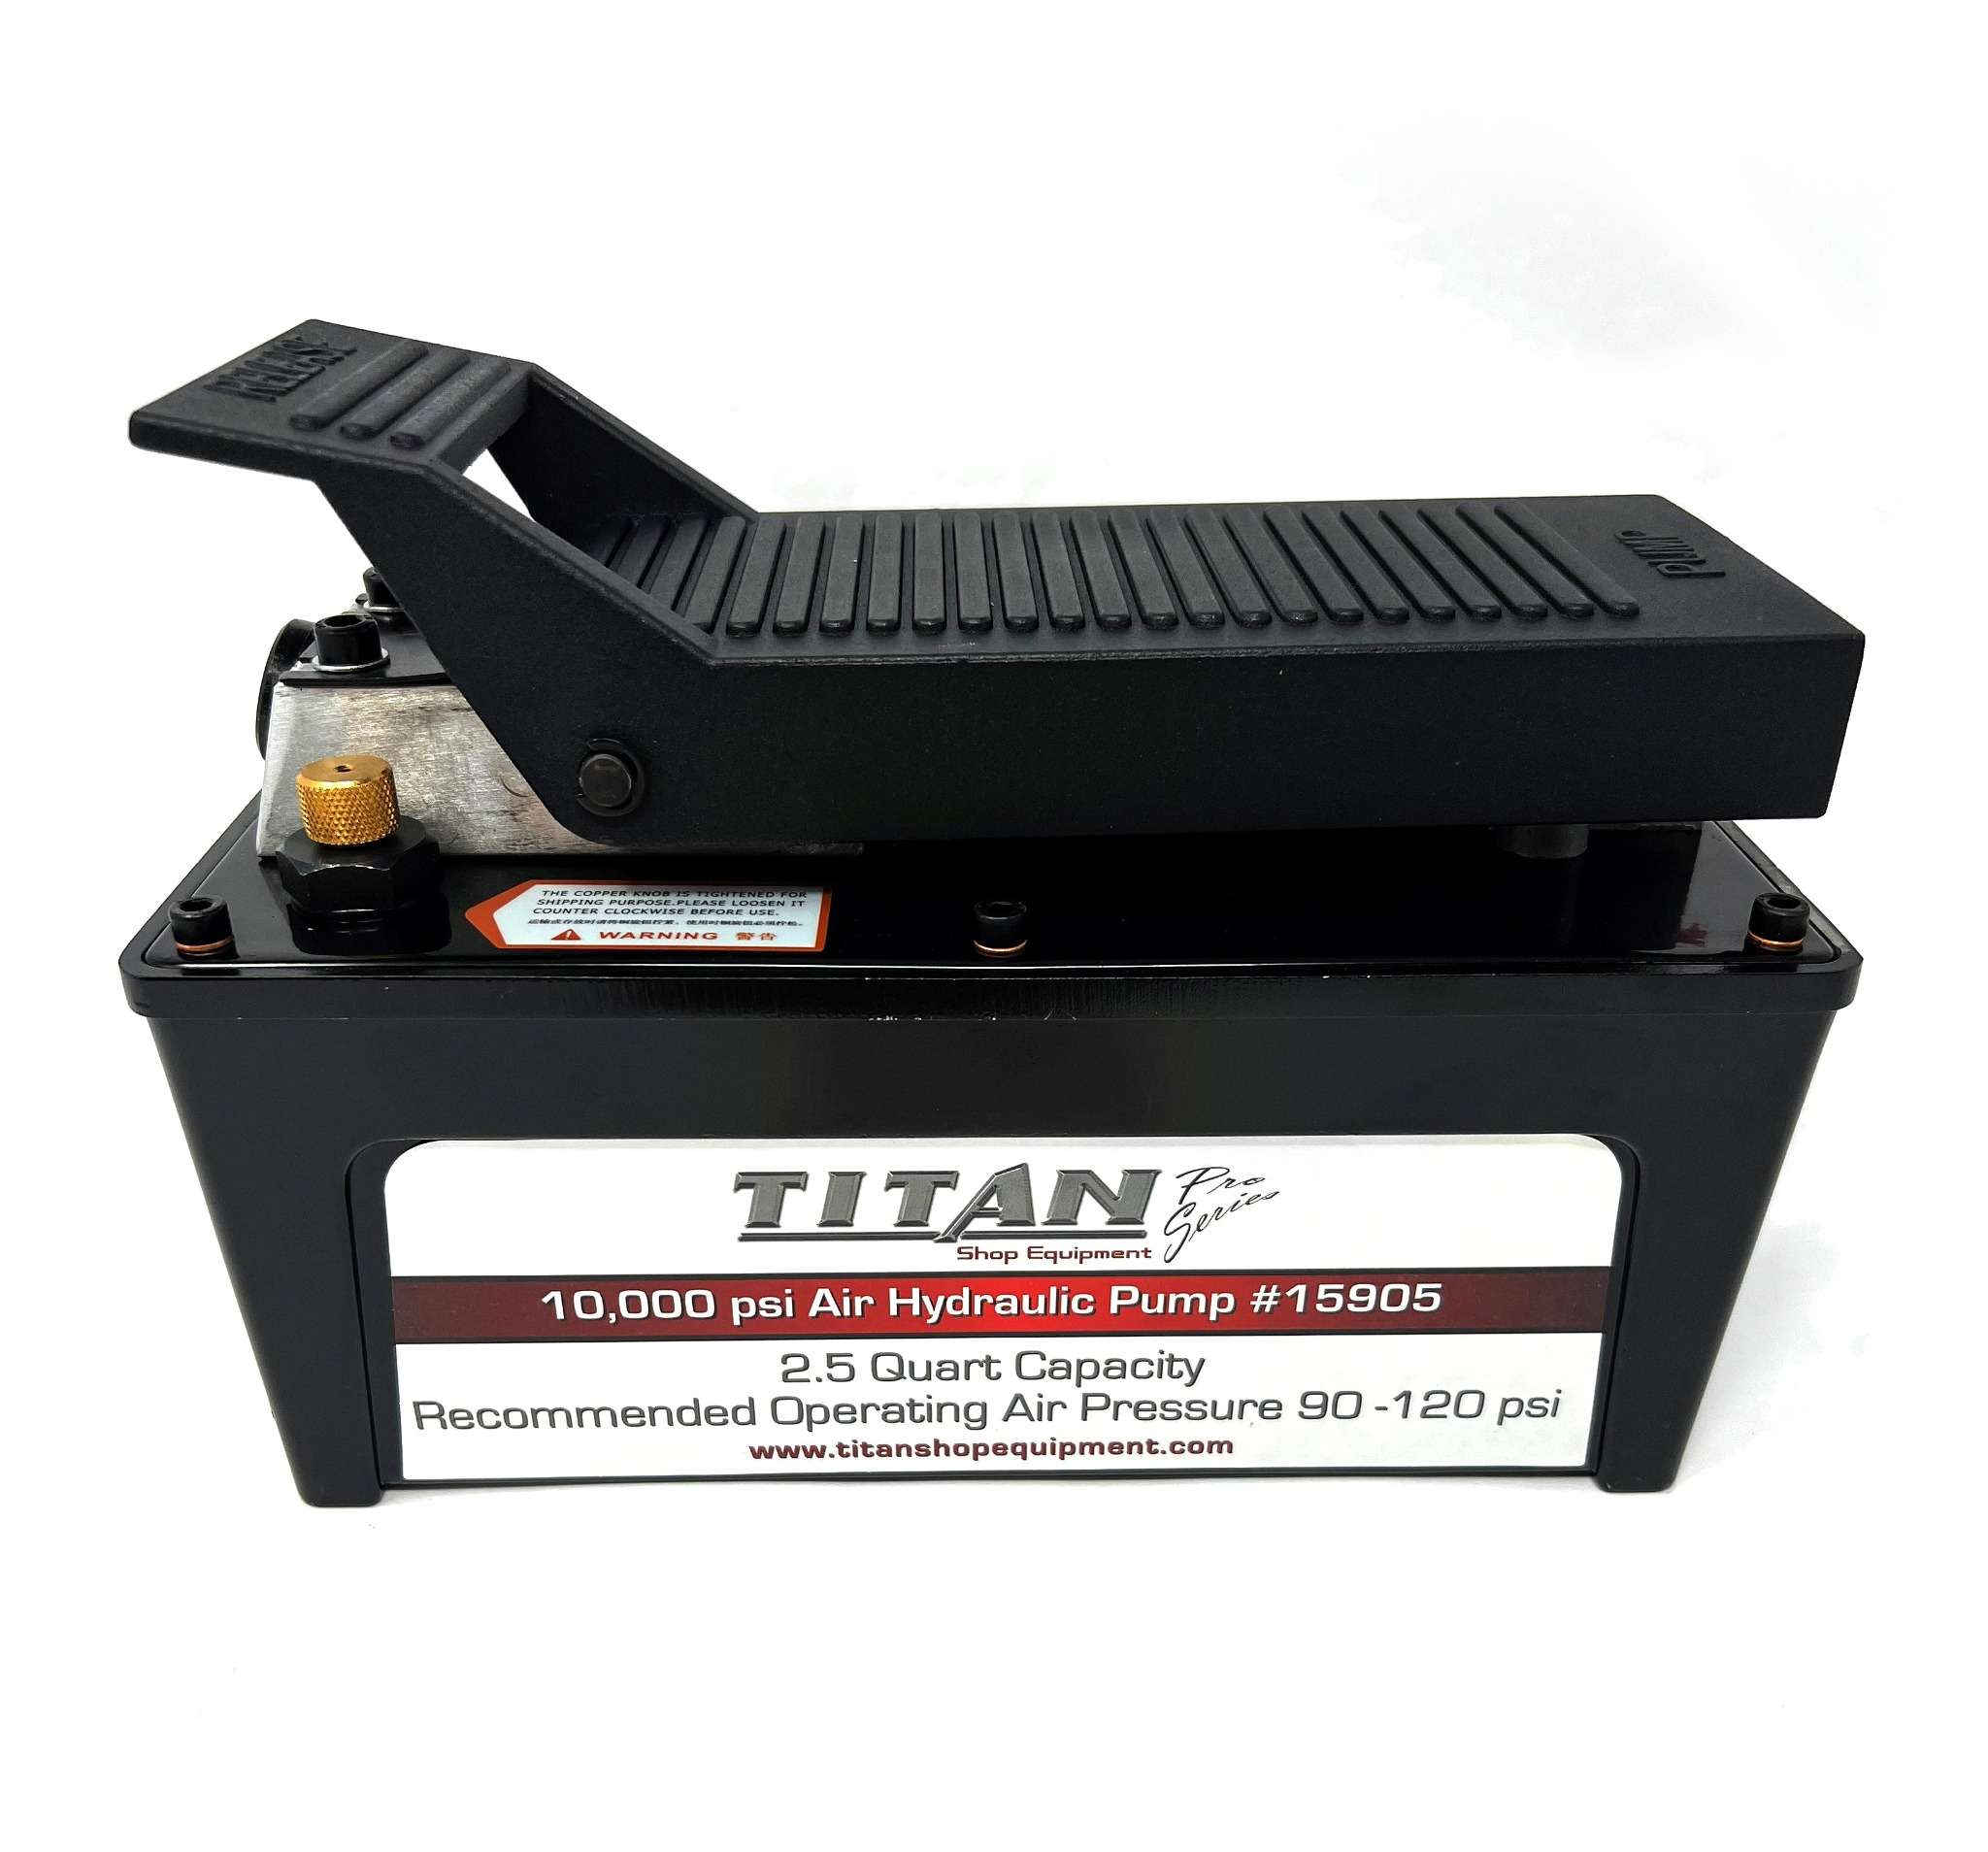 2.5 Quart Titan Air Hydraulic Pump 10,000 PSI